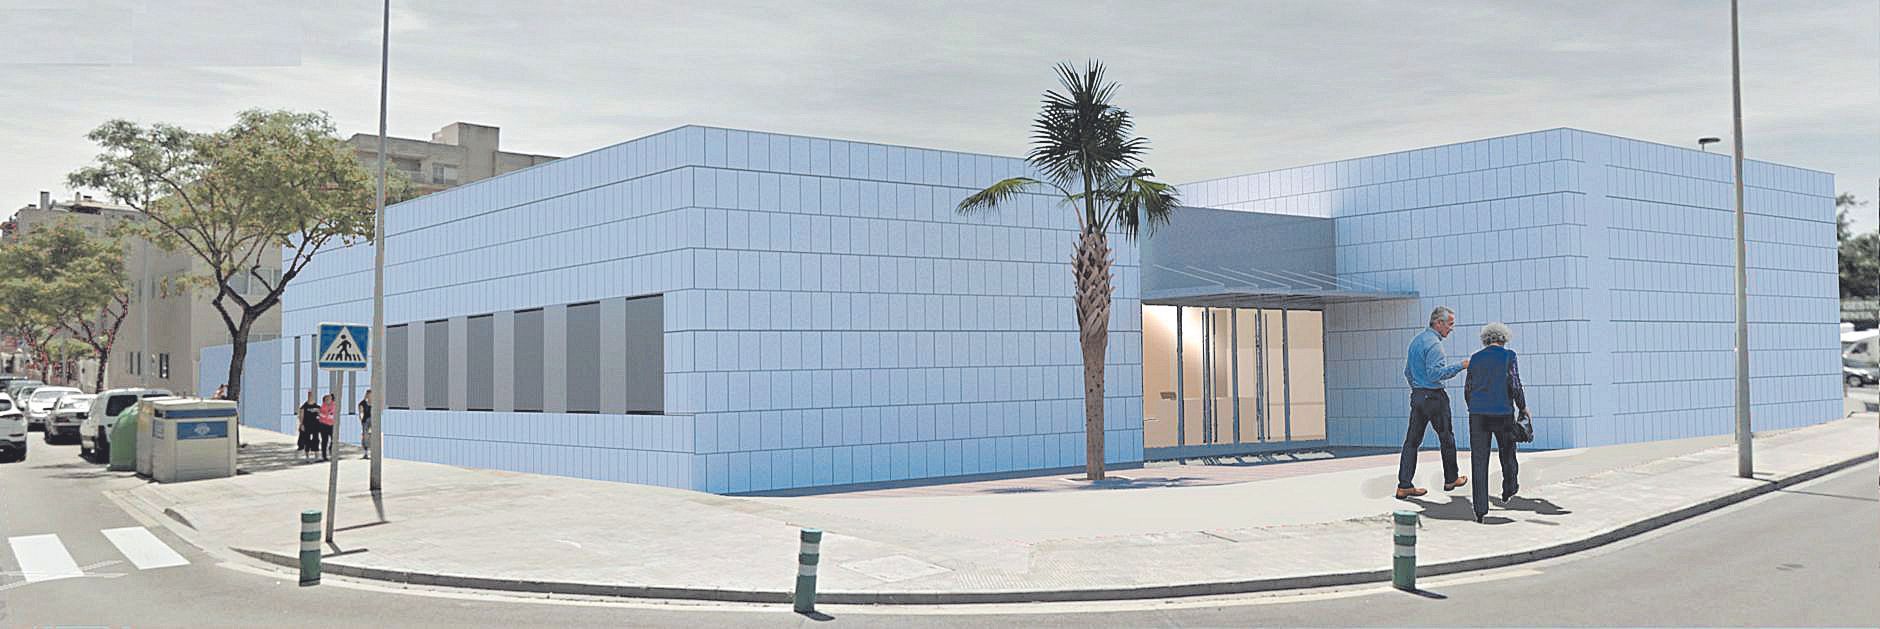 Imagen virtual del futuro centro de día para personas con párkinson, que estará situado entre las calles Desert de les Palmes y Hermanos Rosell Mata.